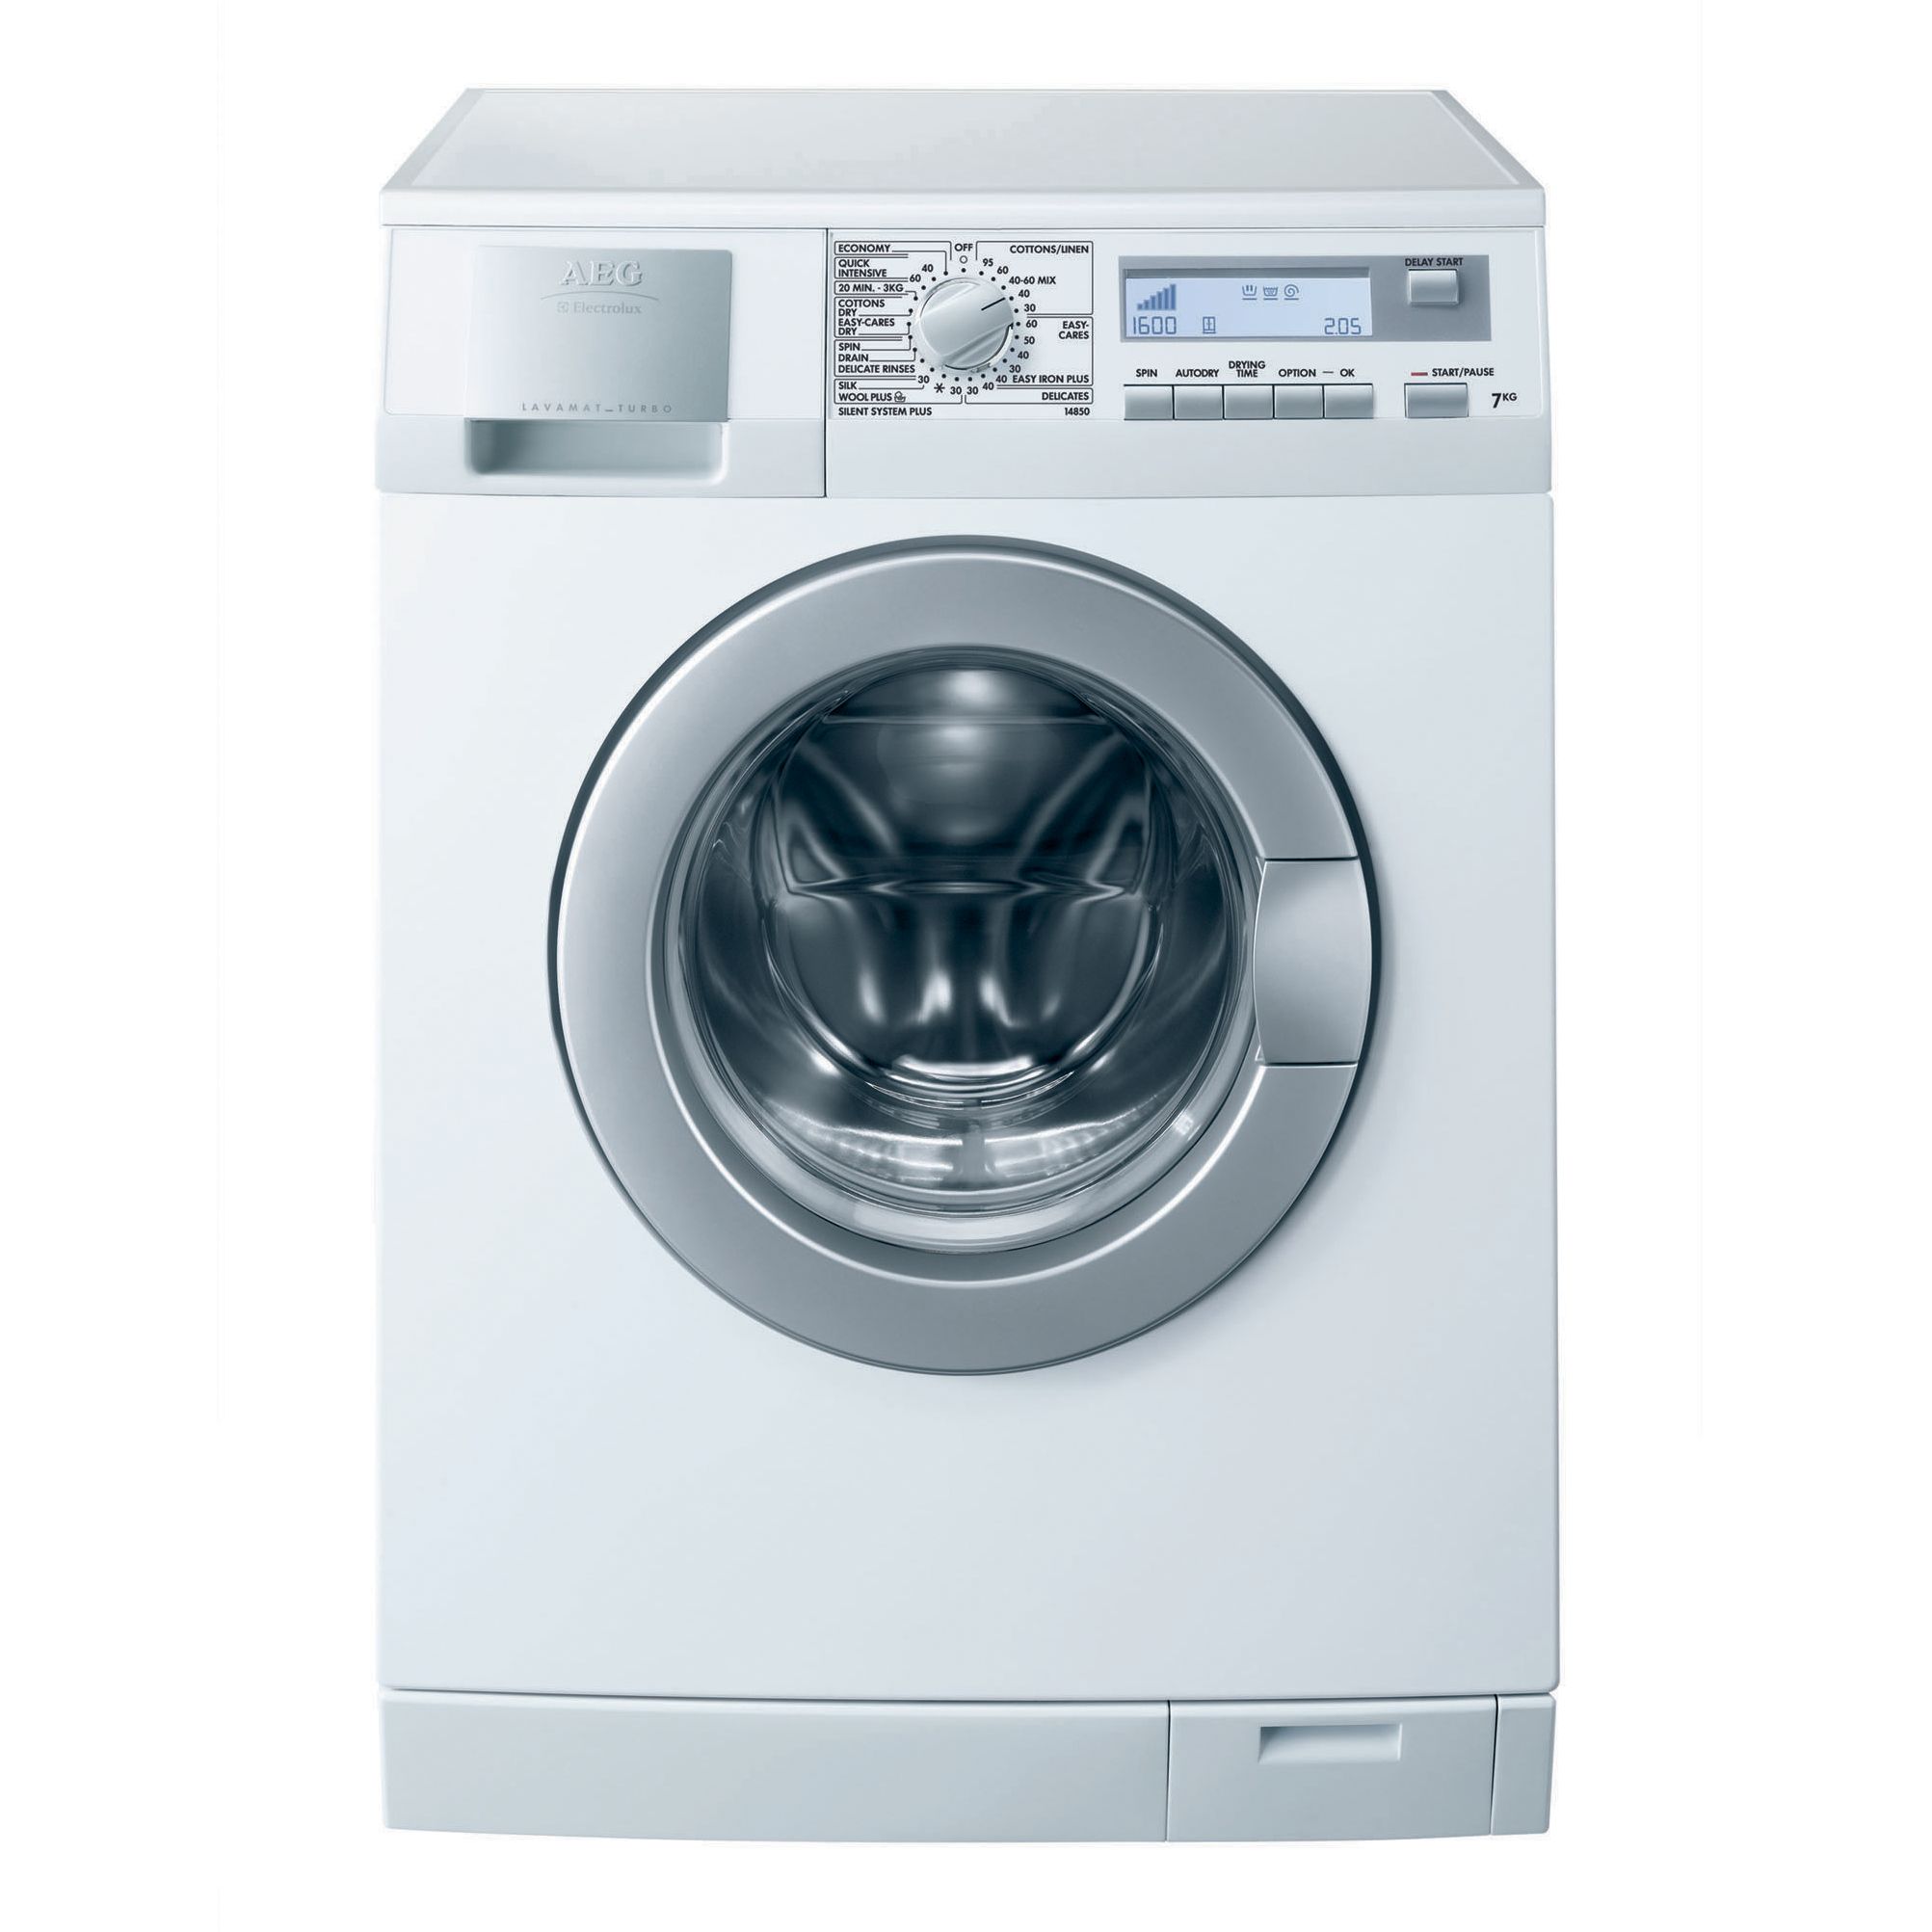 AEG L14850 Washer Dryer, White at John Lewis